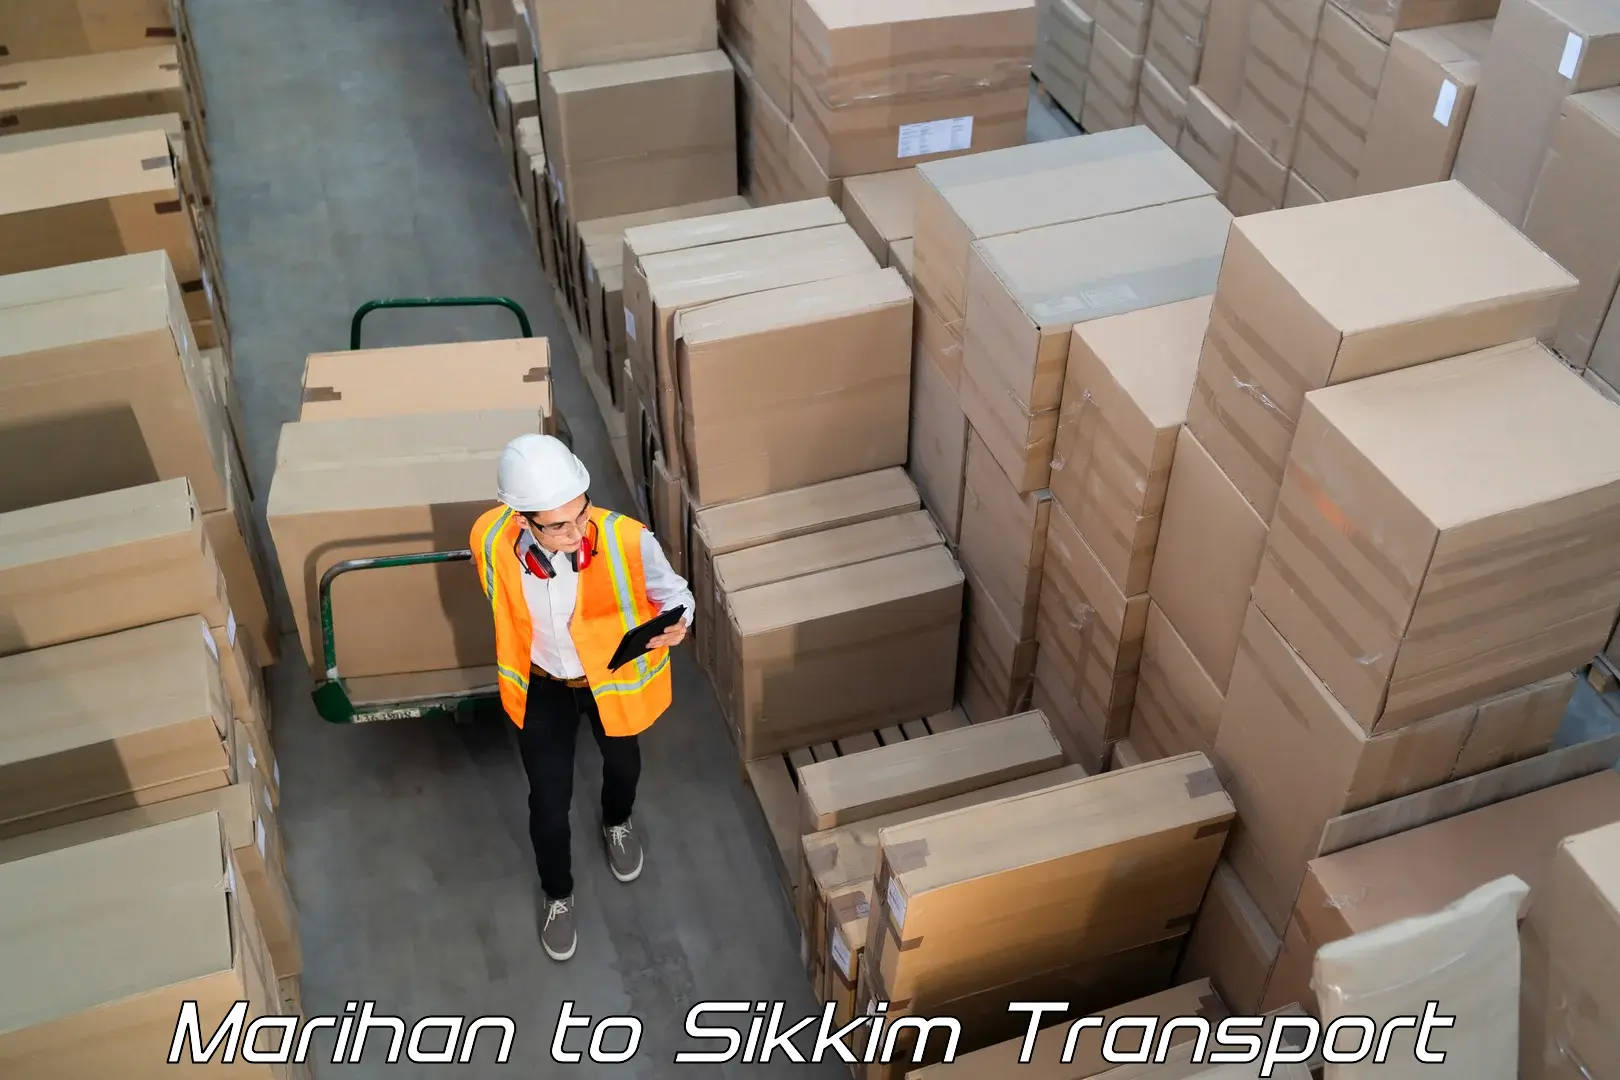 Daily parcel service transport Marihan to Mangan